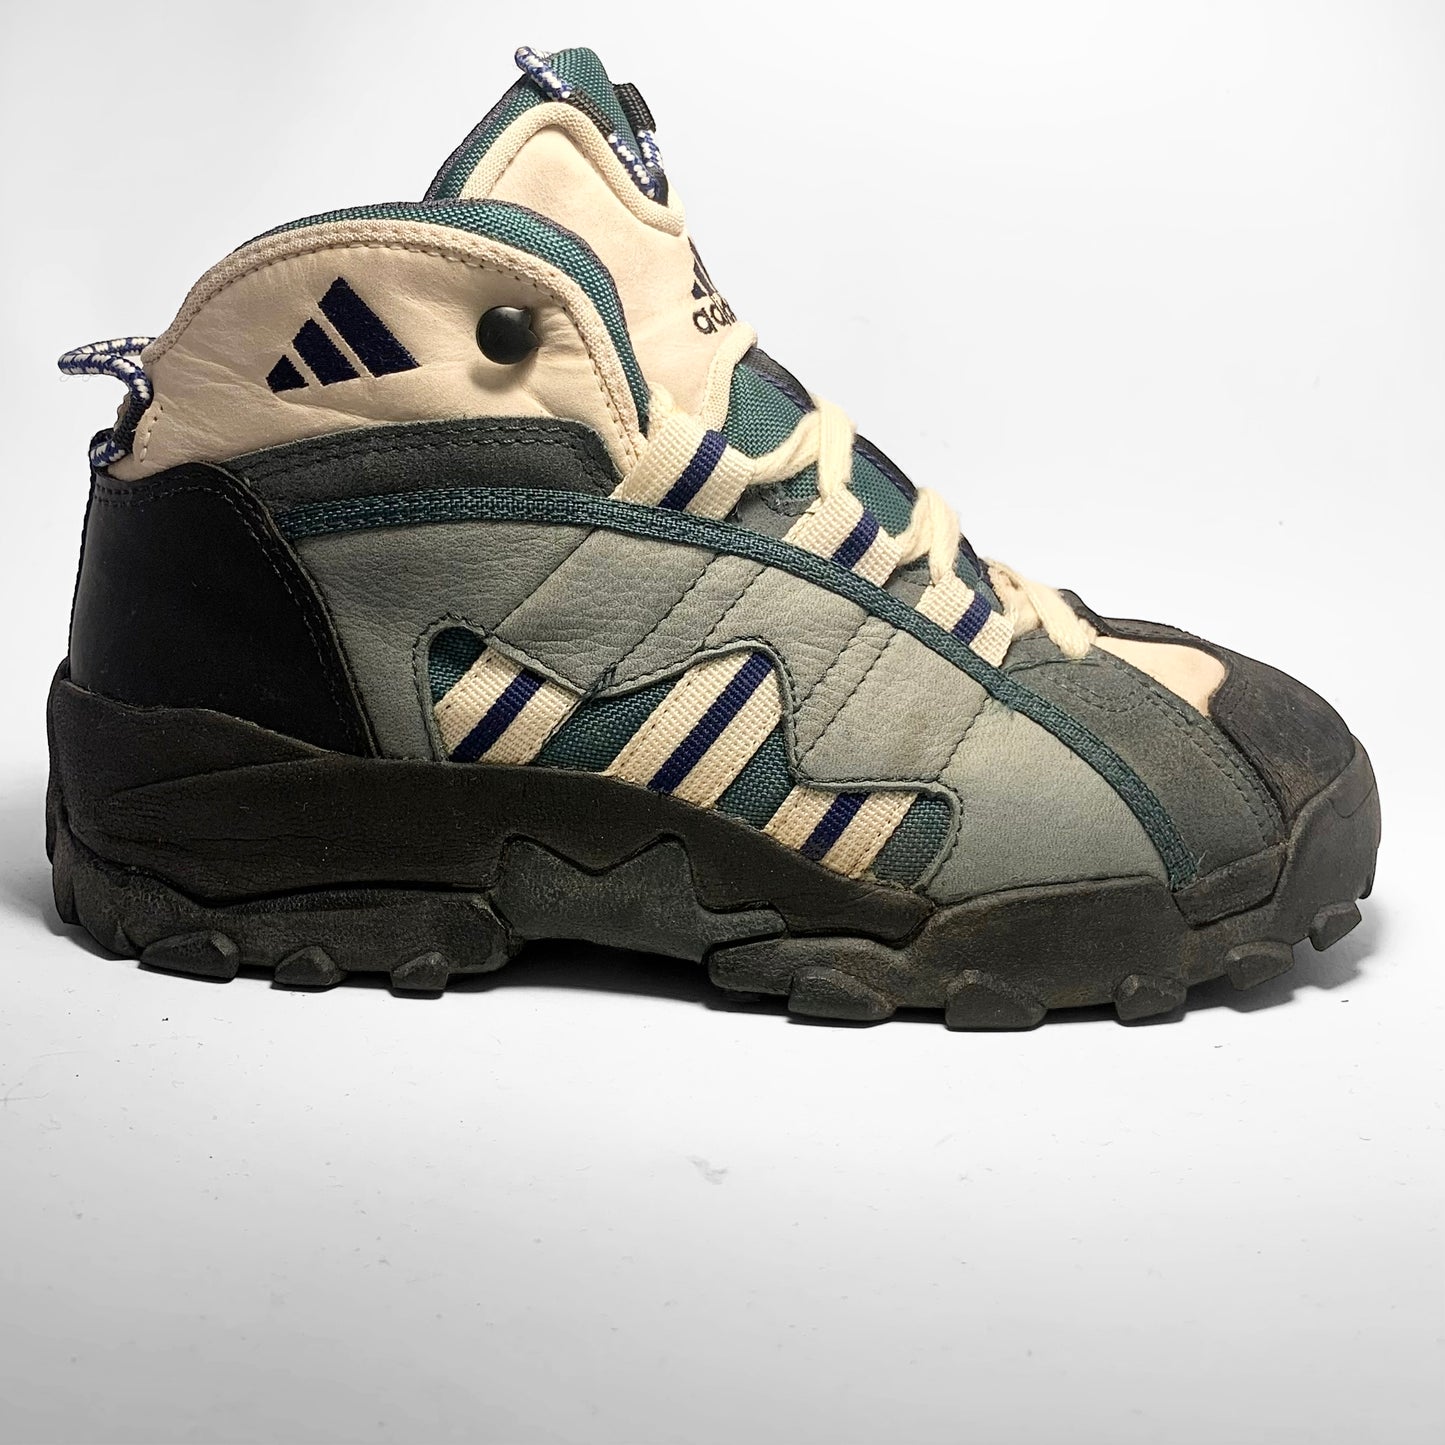 Adidas Adventure Boots (1996